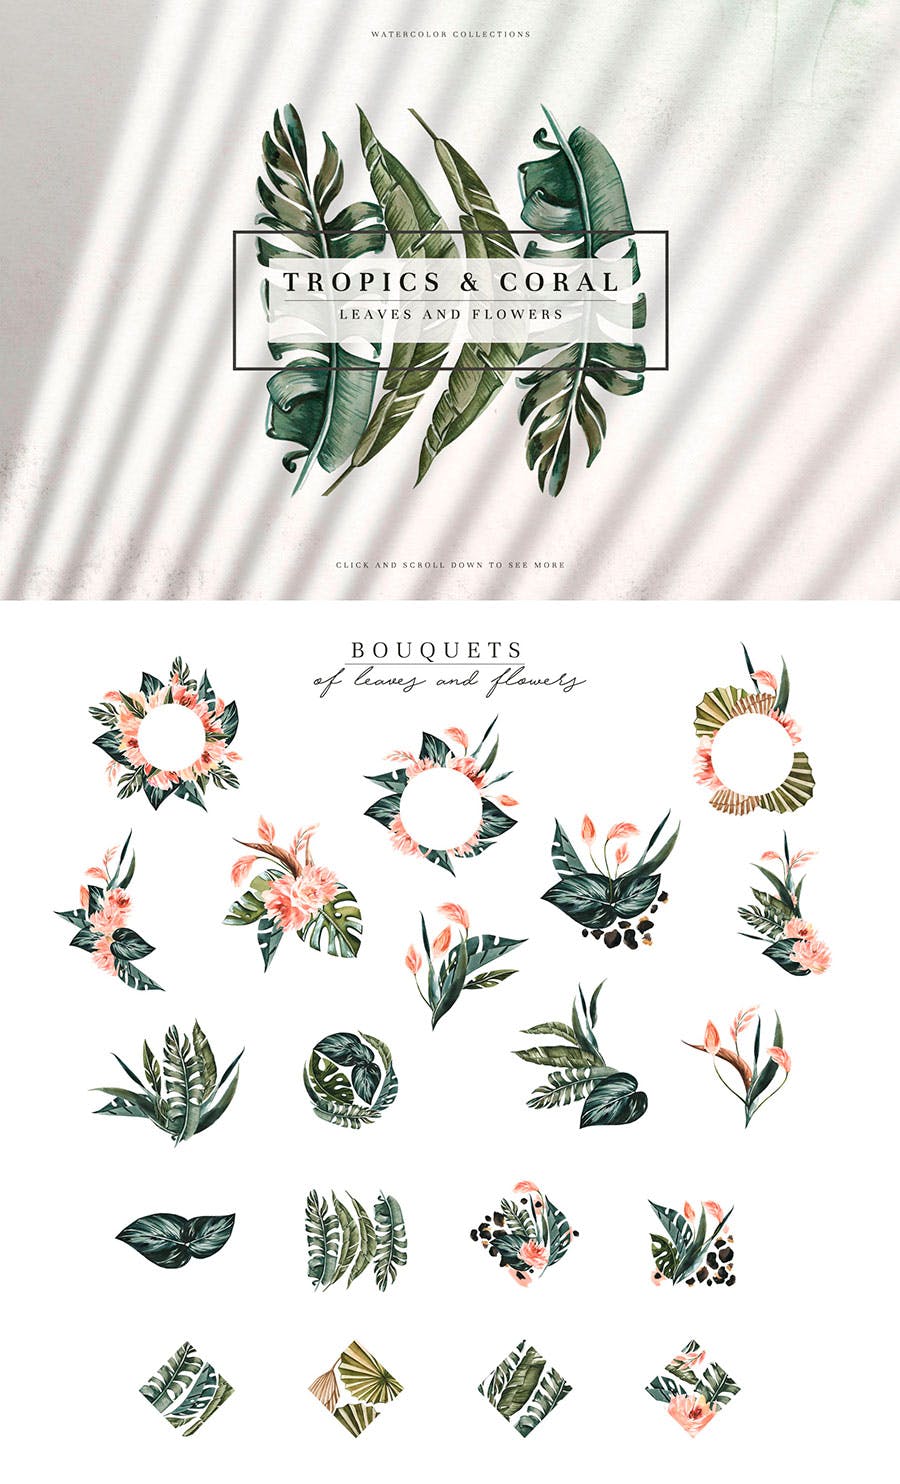 热带植物水彩手绘图案设计素材套装 Tropics & Coral Watercolor Set插图(7)